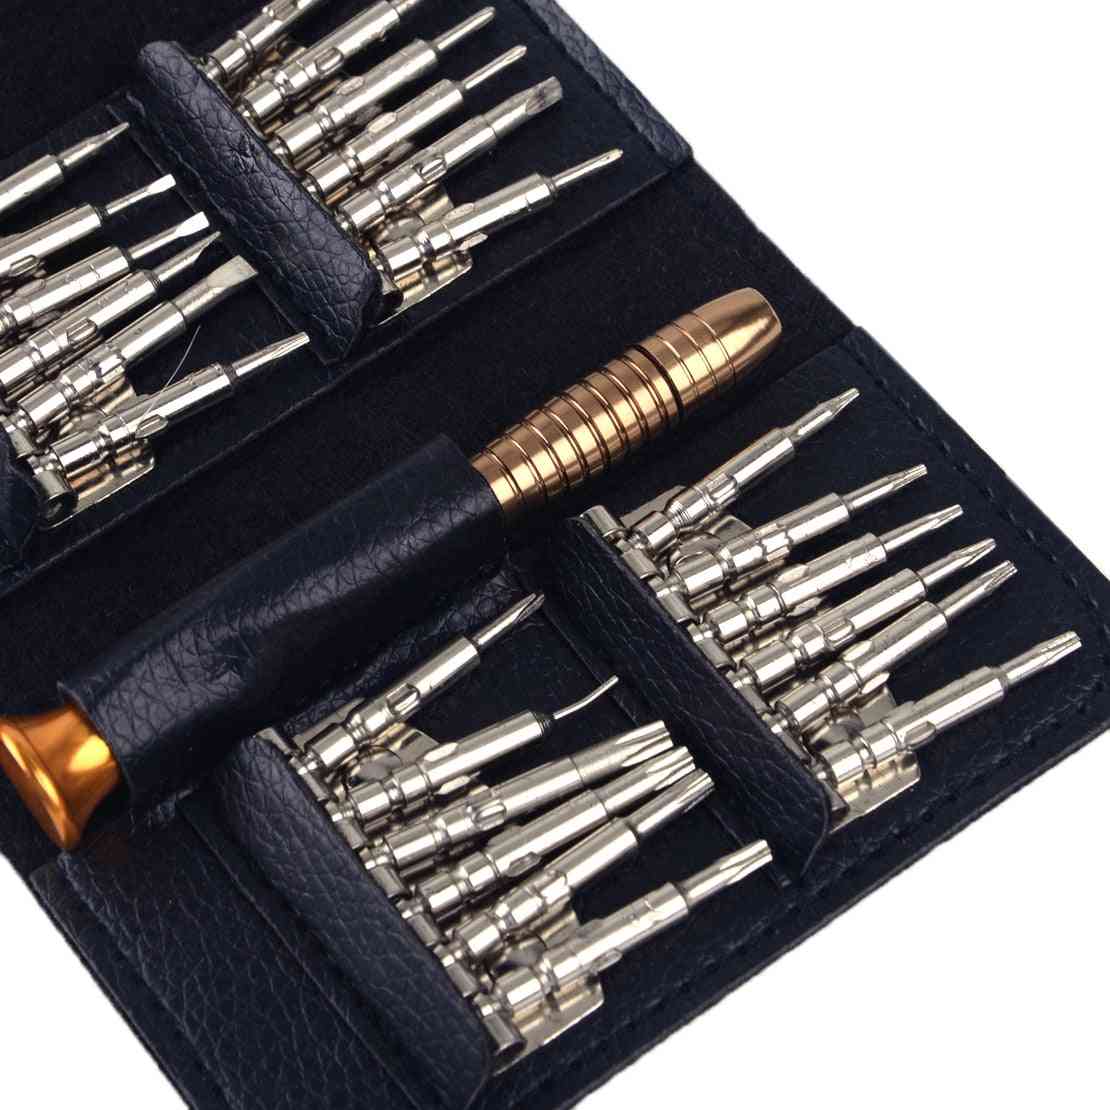 25 In 1 Screwdriver Mini Repair Precision Tools Kit